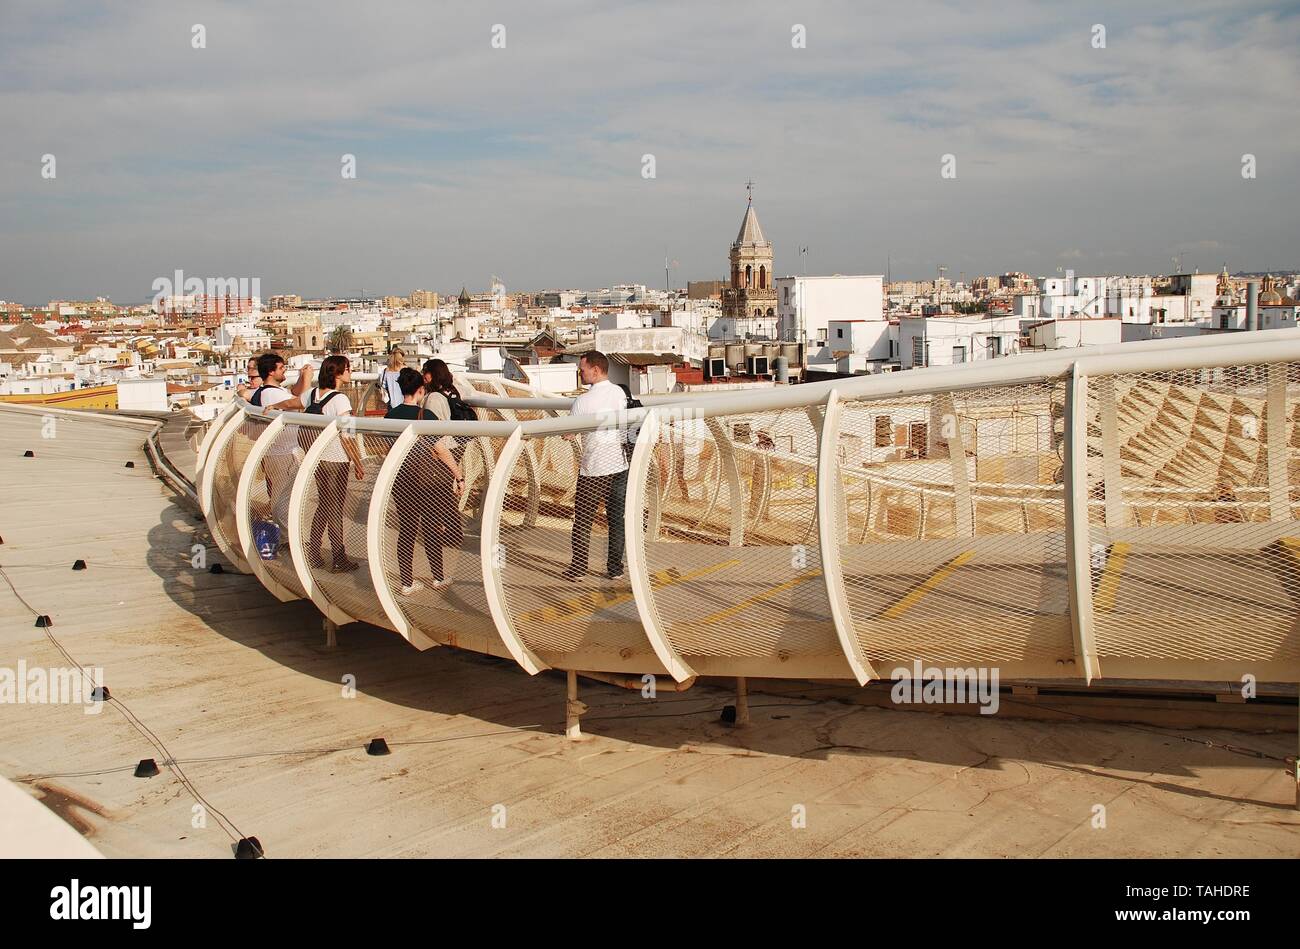 La passerelle sur le toit du Metropol Parasol à Séville, Espagne, le 2 avril 2019. Achevée en 2011, la structure est connue sous le nom de Las Setas de Sevilla. Banque D'Images